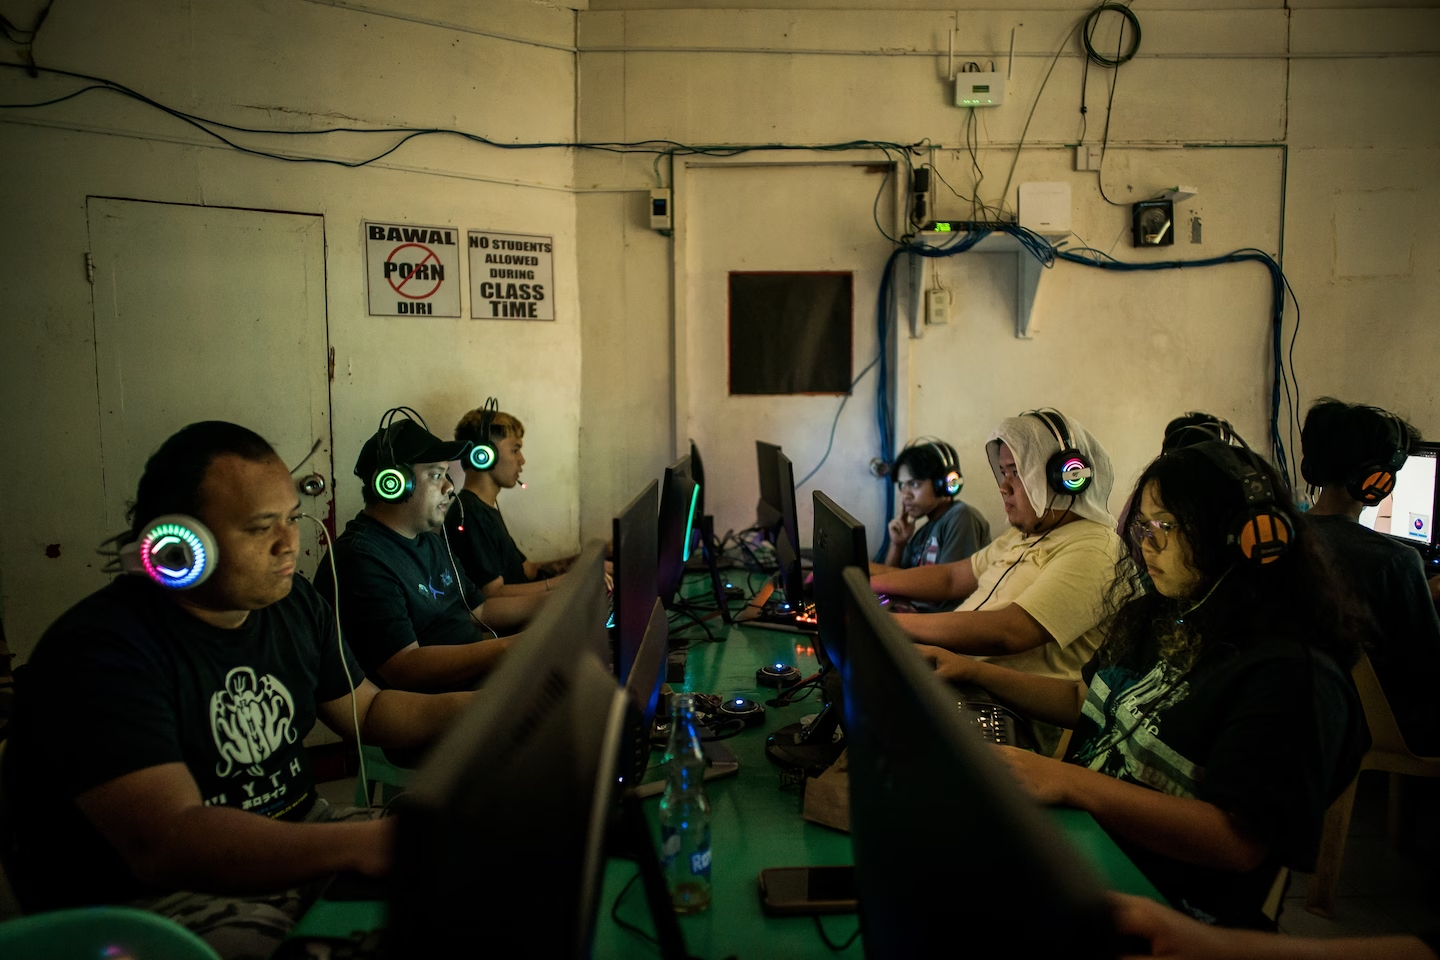 菲律宾的网吧现在是为人工智能模型分类和标记数据的工作人员经常光顾